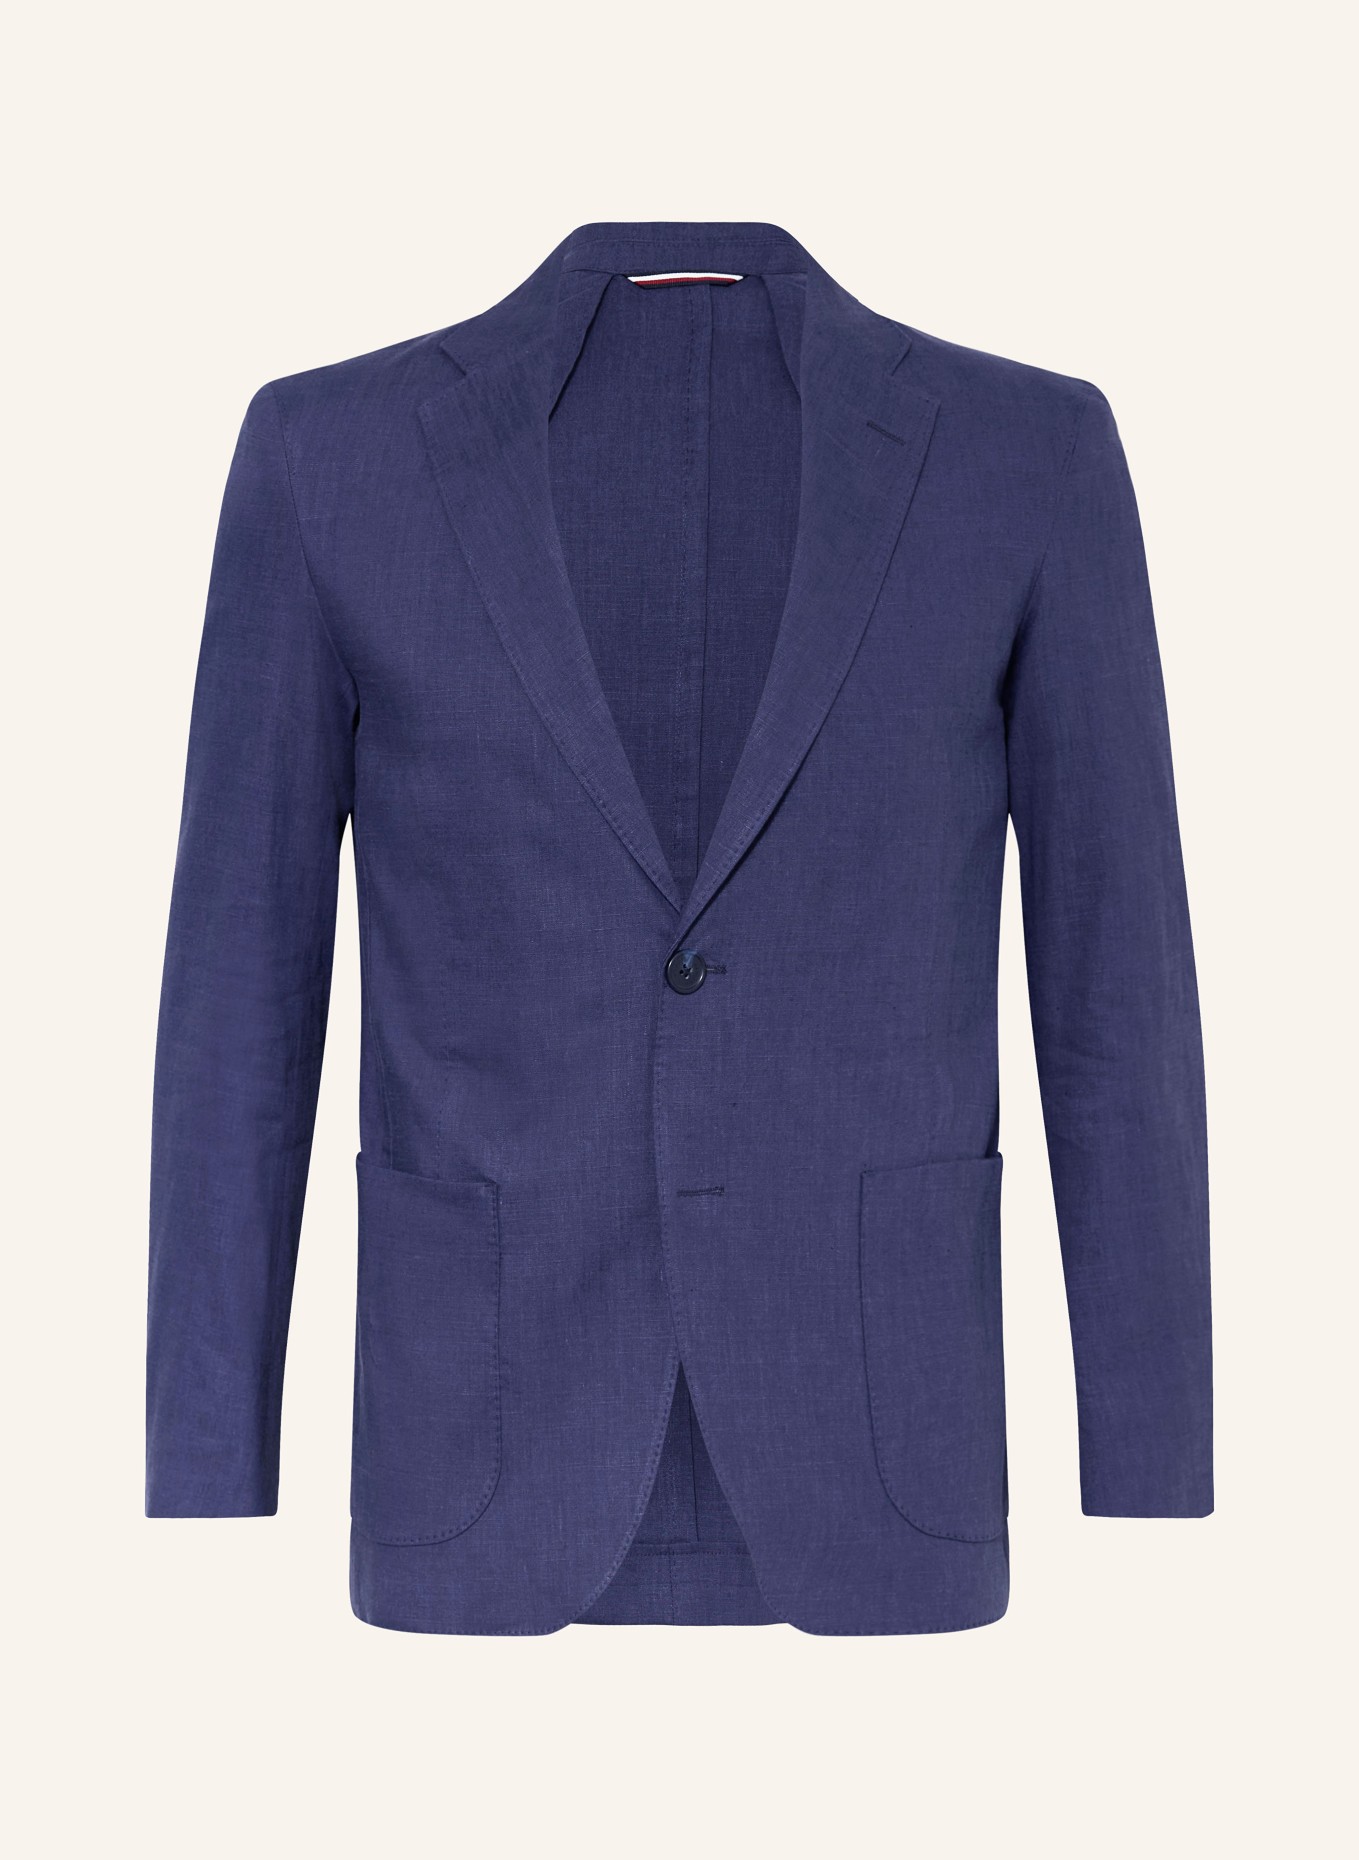 TOMMY HILFIGER Linen jacket regular fit, Color: C5J Anchor Blue (Image 1)